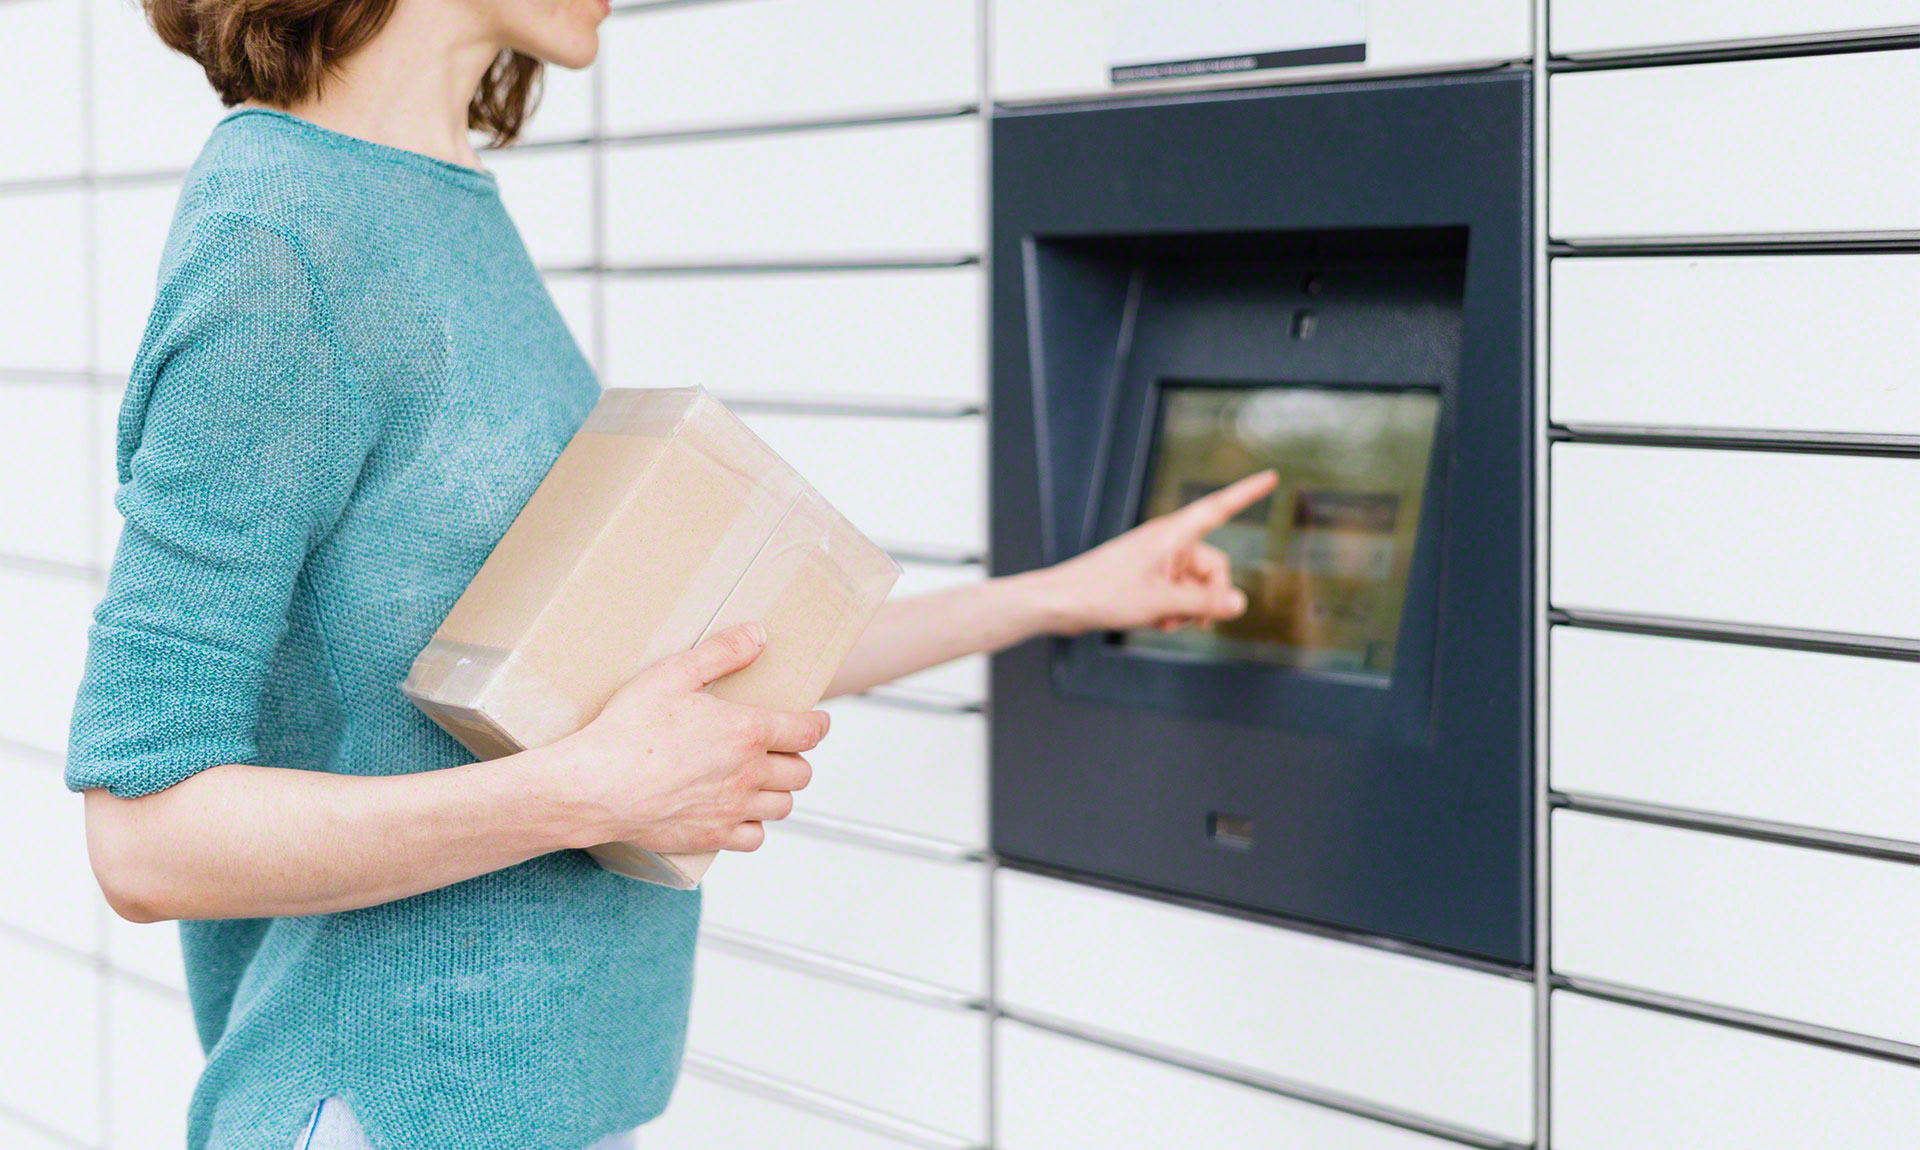 Automat paczkowy umożliwia konsumentowi odebranie lub nadanie paczki